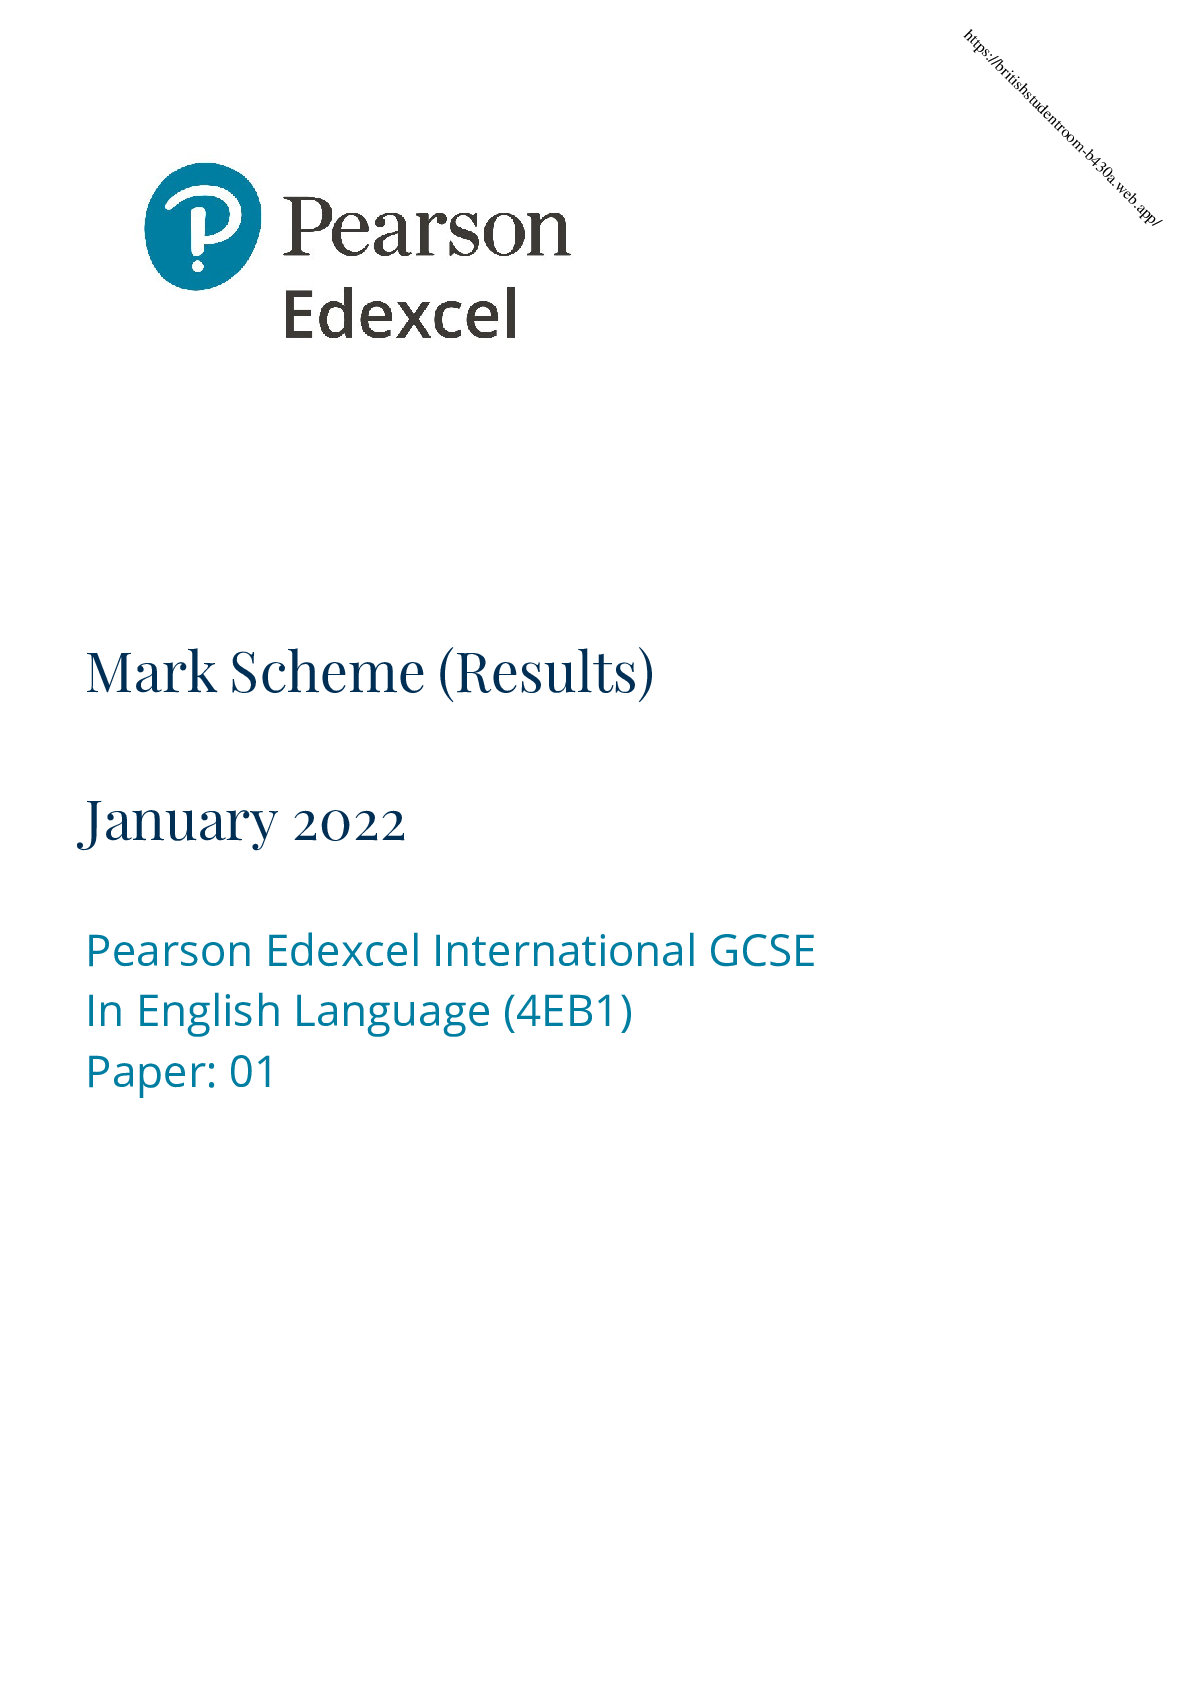 english coursework mark scheme edexcel